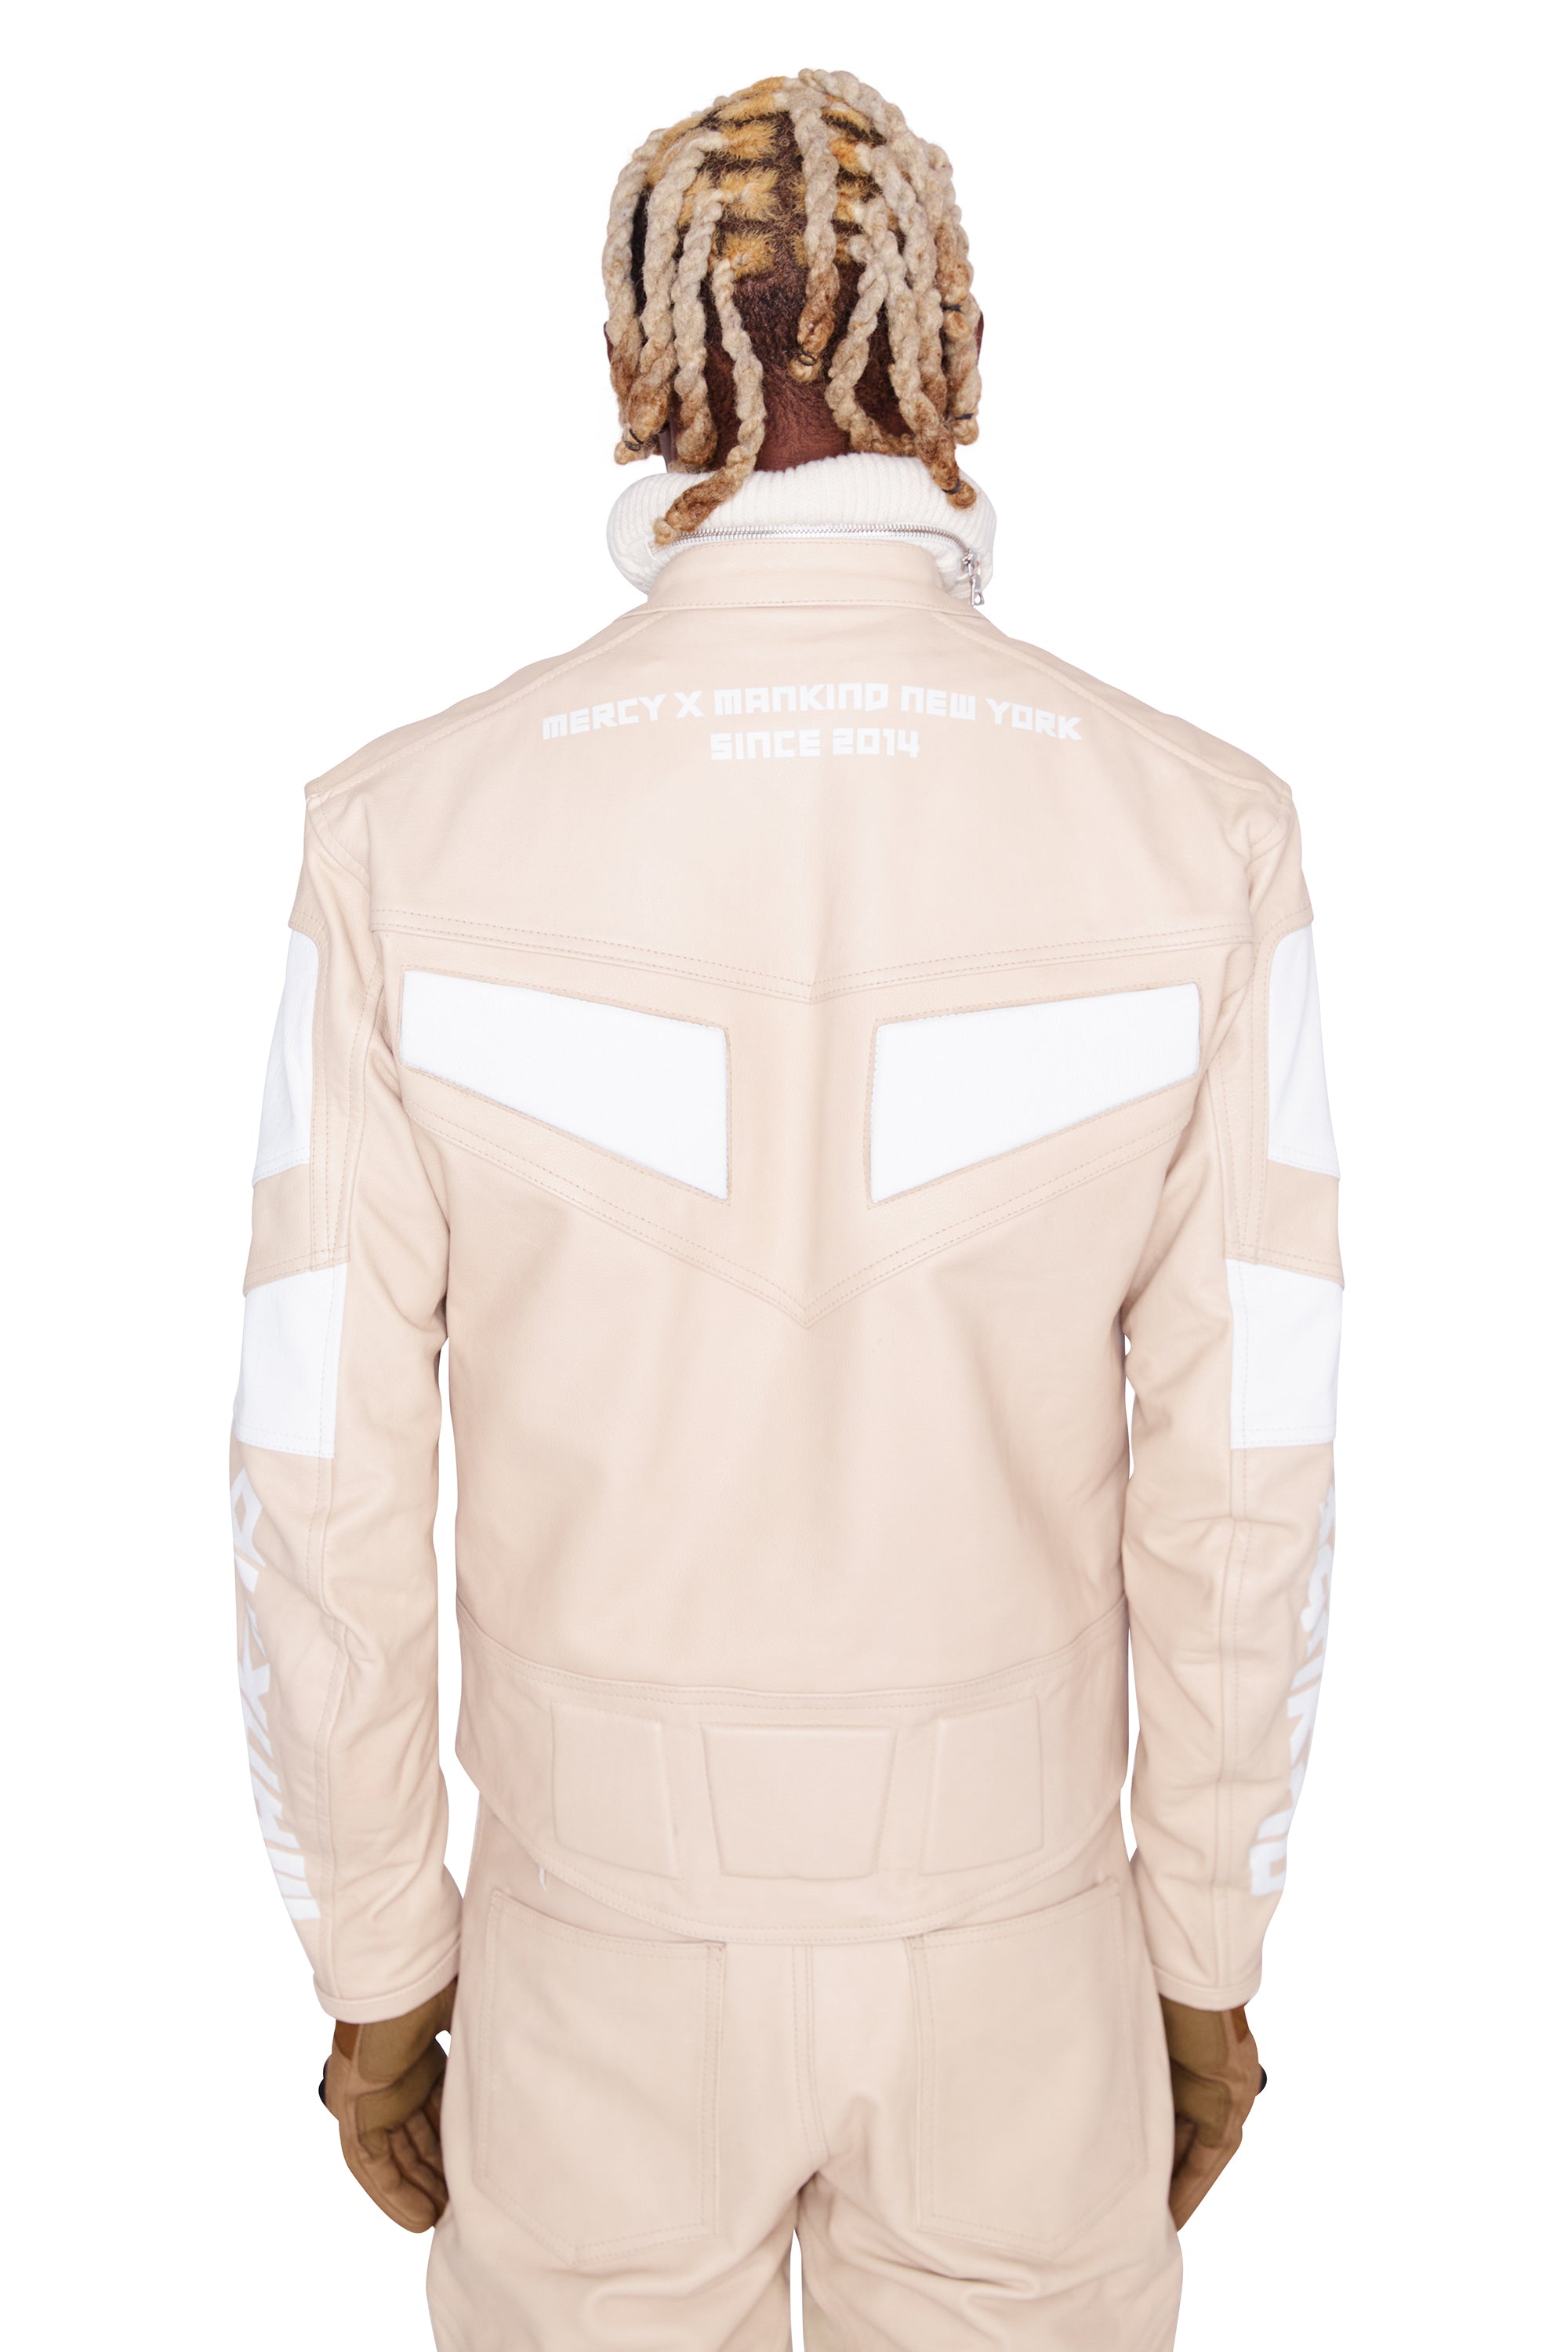 Moto Leather Racer Jacket (Sand)